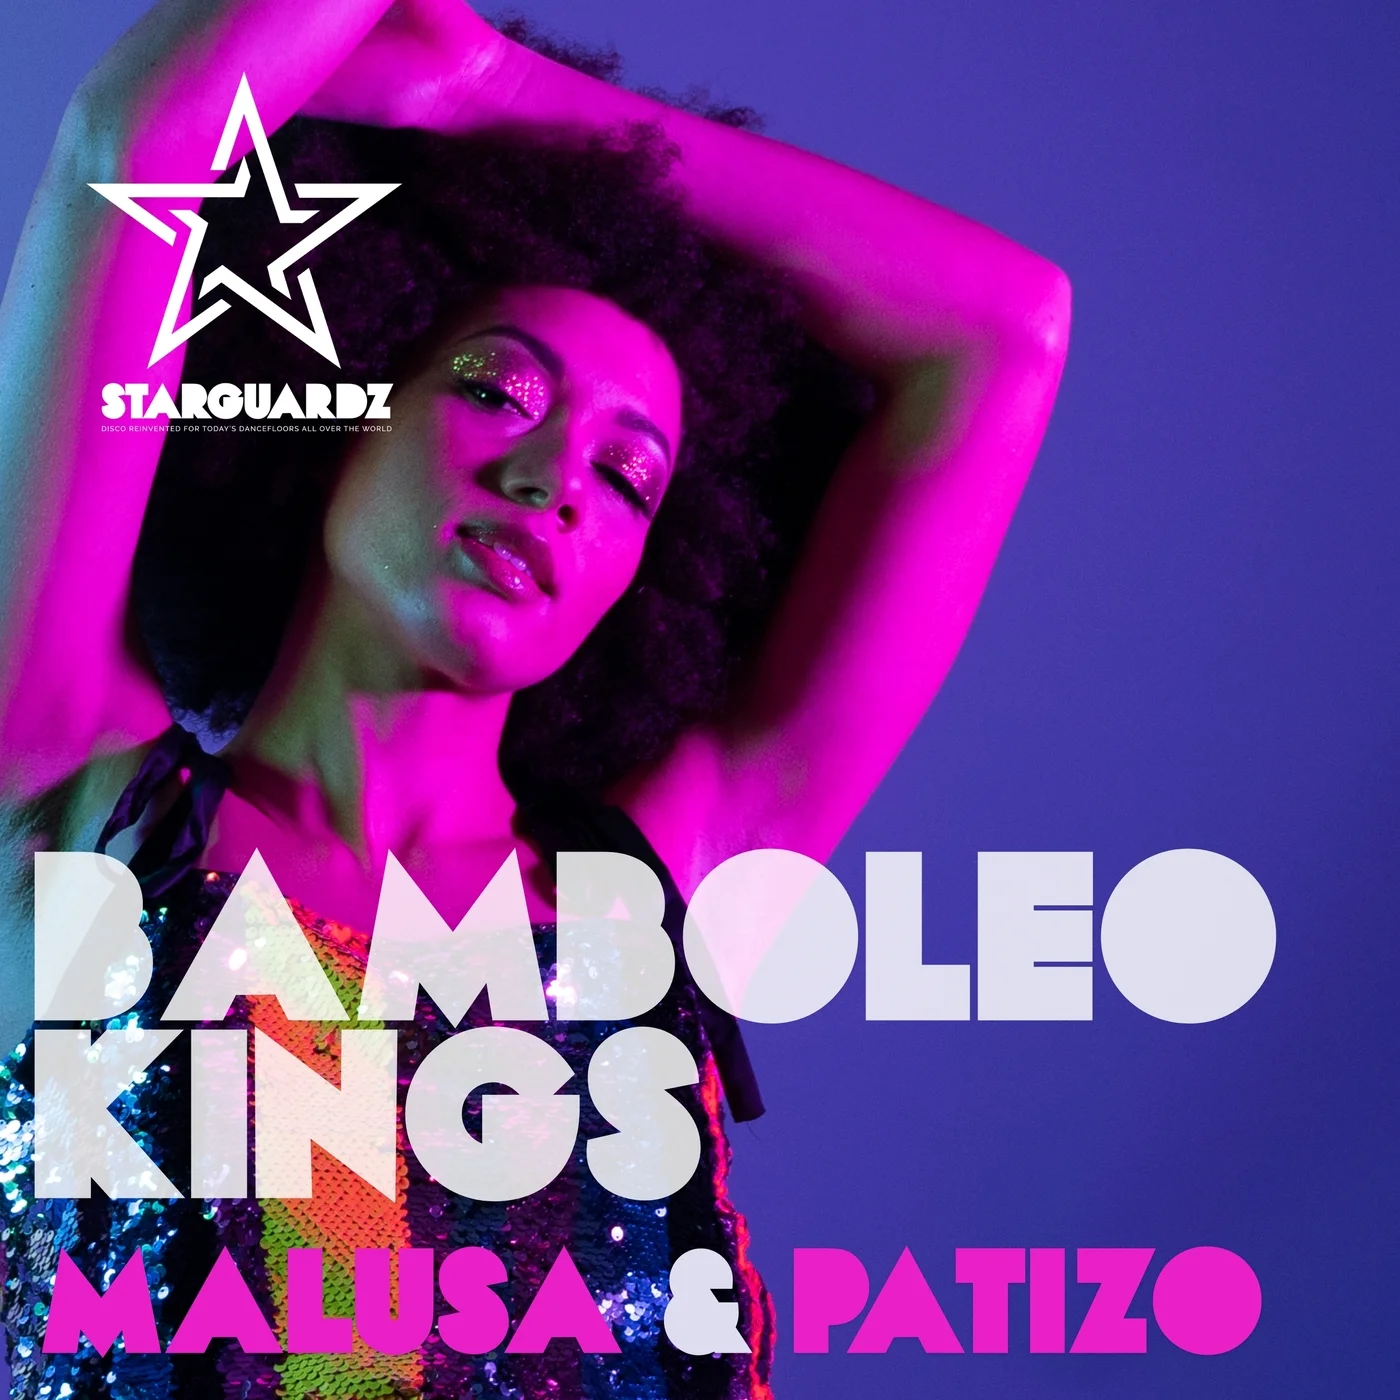 Malusa & Patizo - Bamboleo Kings (Club Mix)